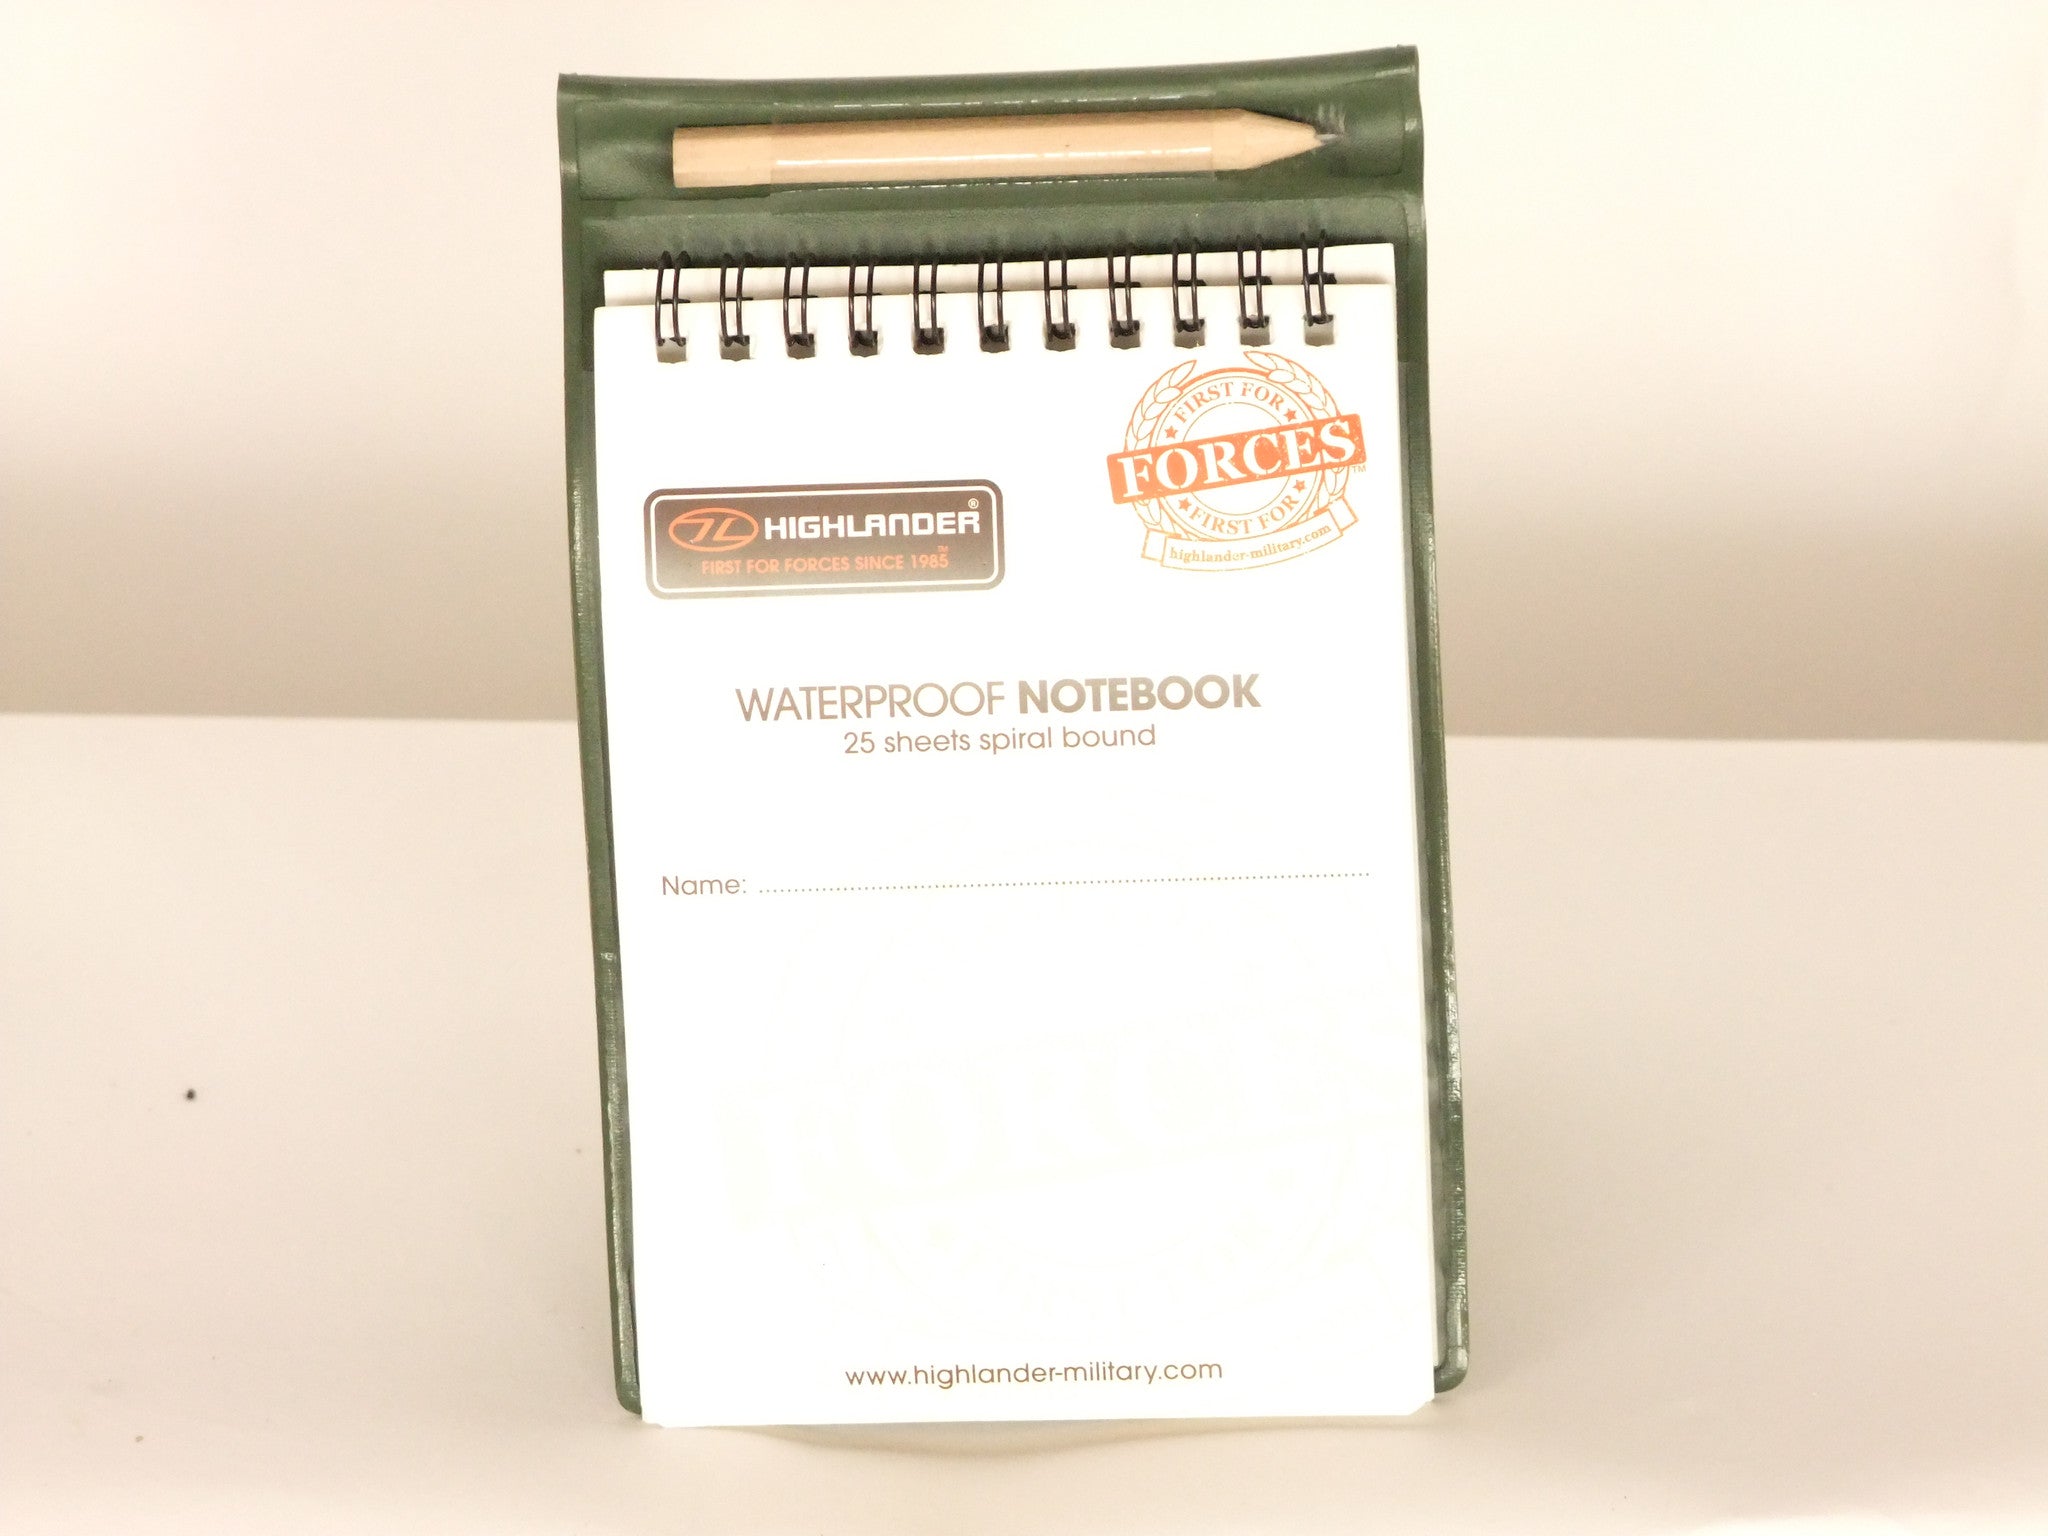 Waterproof notebook.